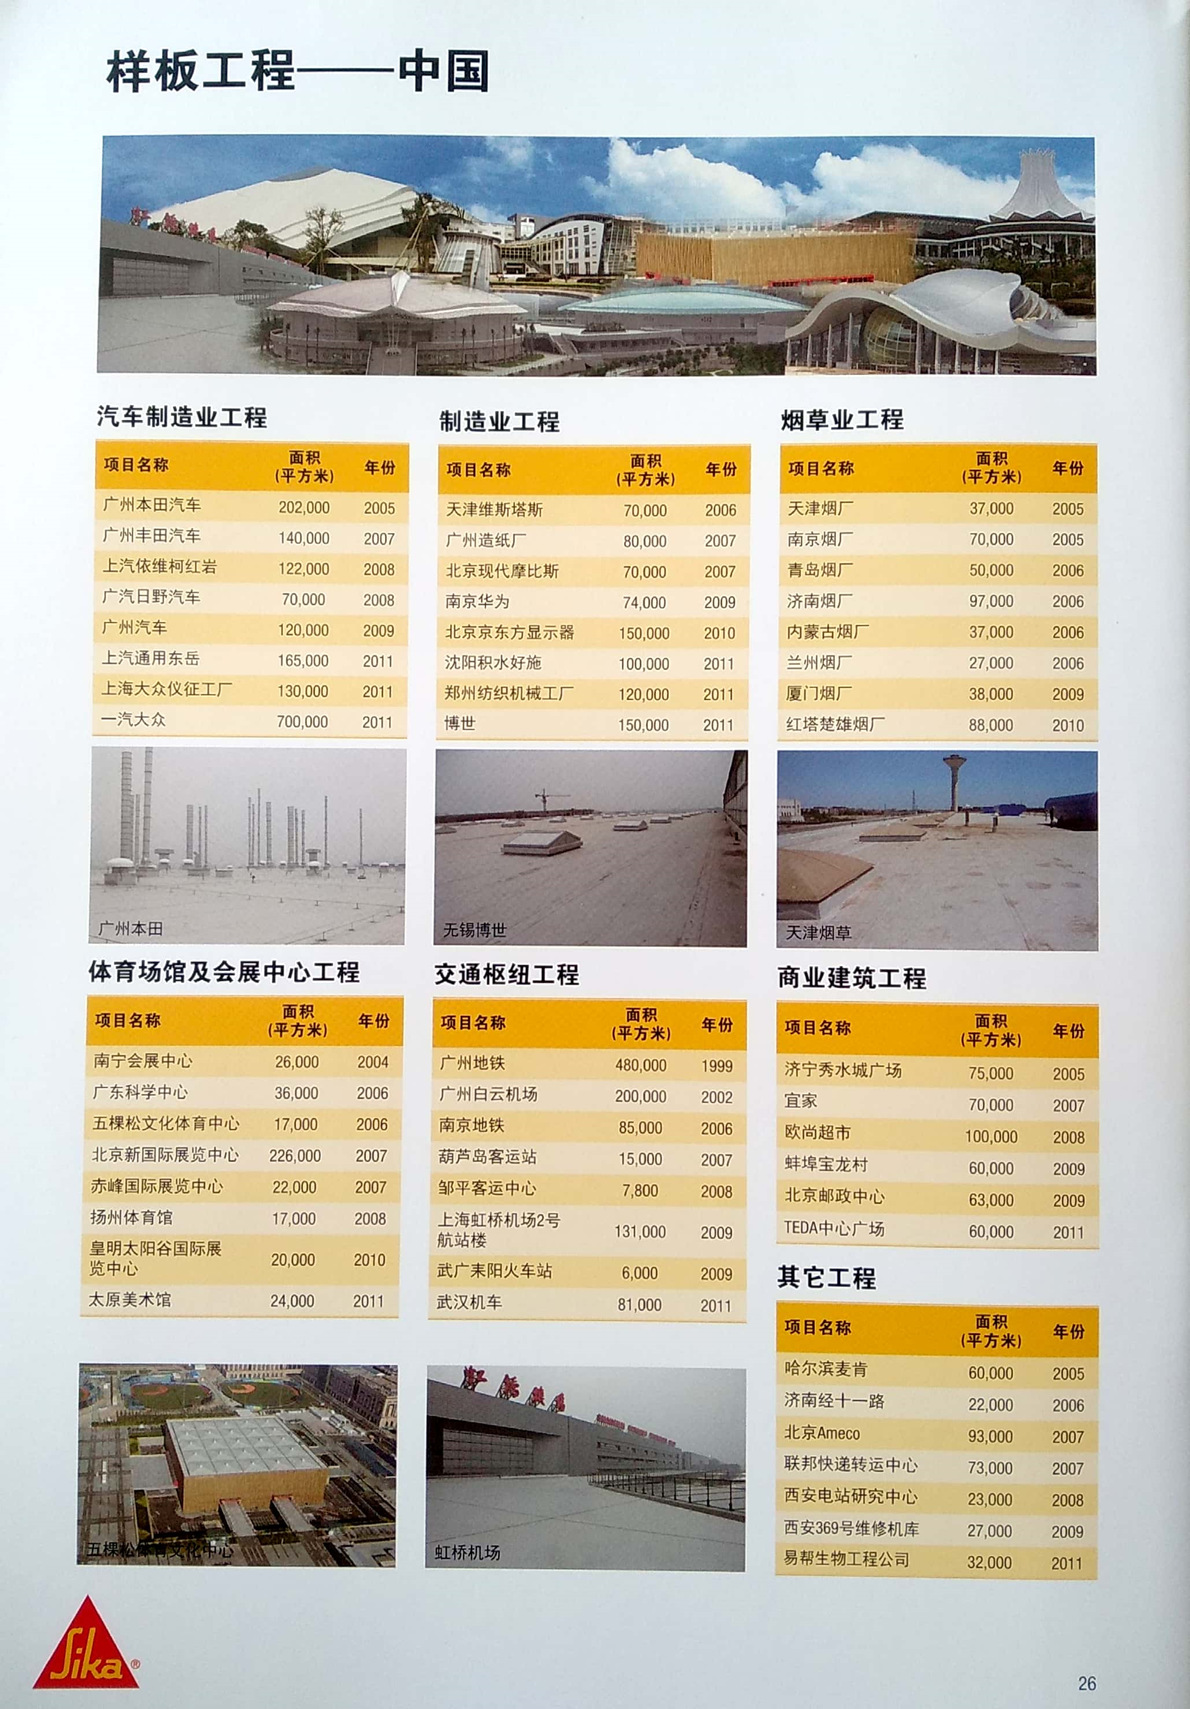 西卡防水样板工程-中国.jpg